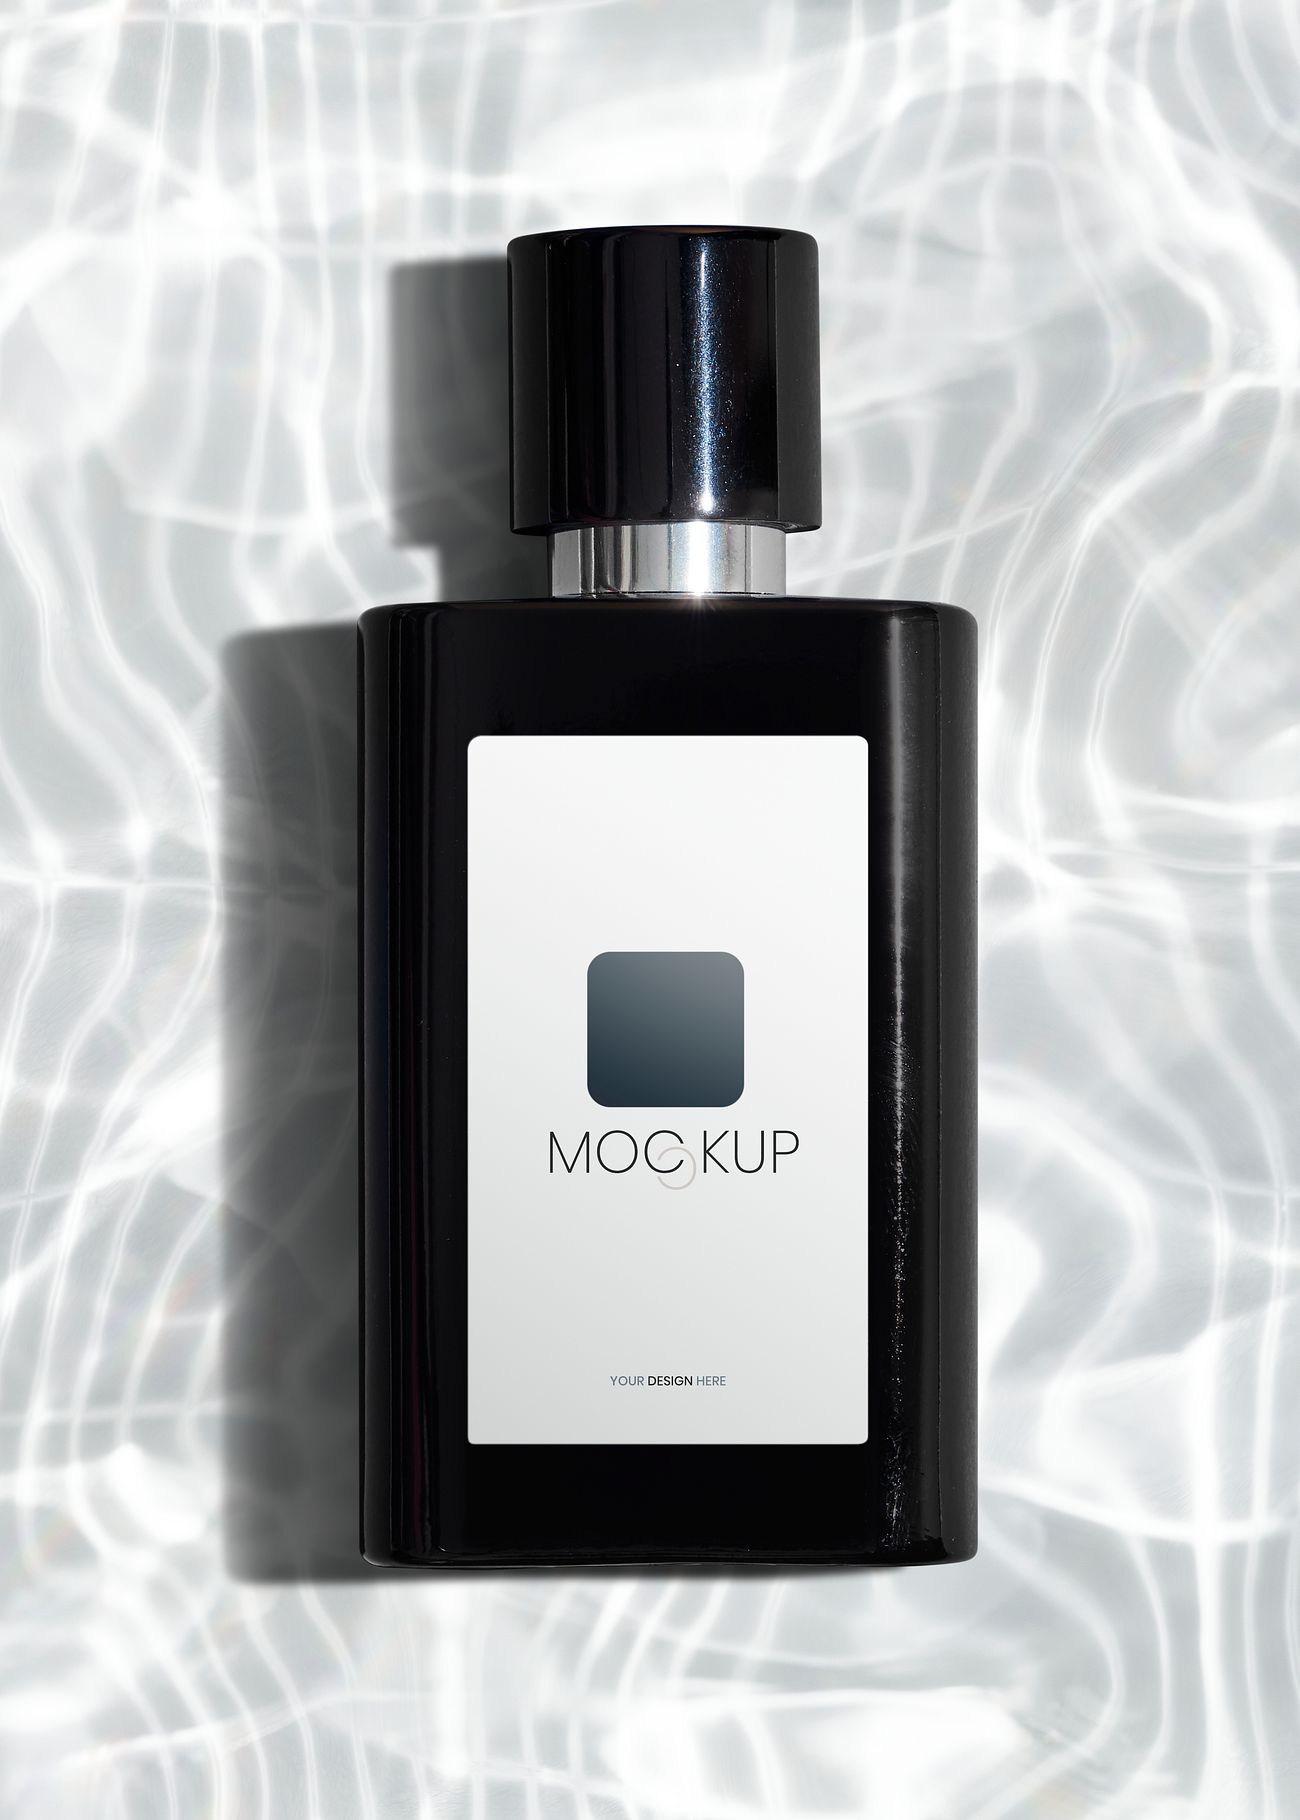 Download Black perfume glass bottle mockup design | Royalty free psd mockup - 2381443